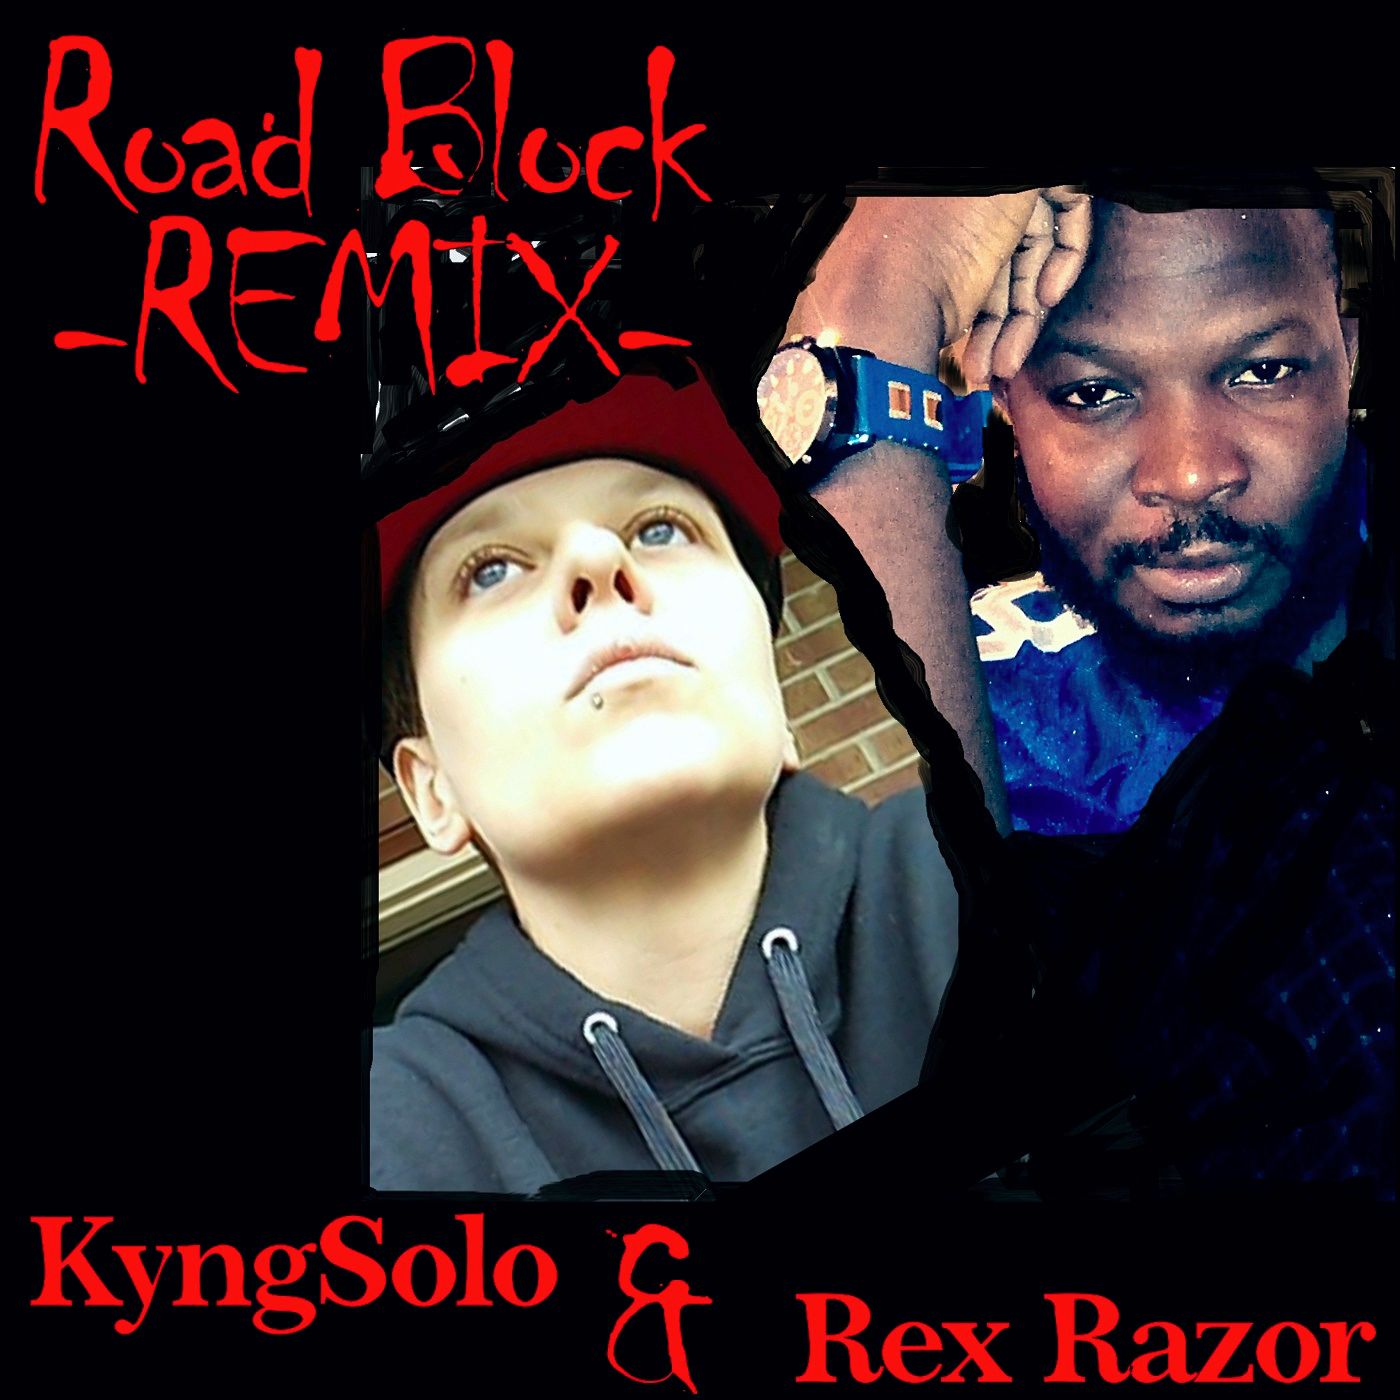 Road Block_Rex Razor_Kyngsolo